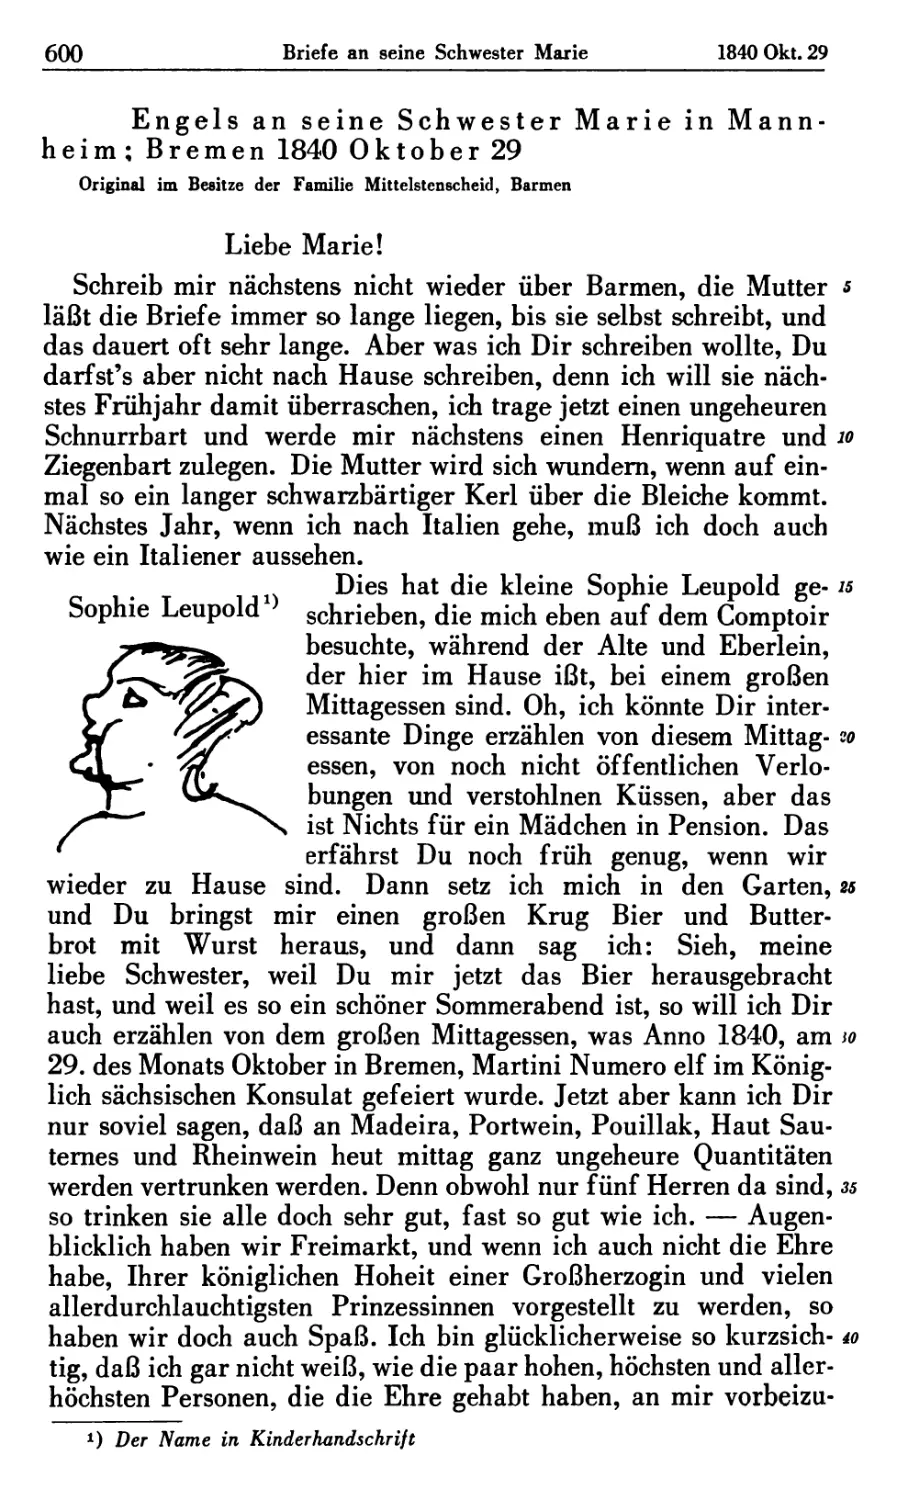 Engels an seine Schwester Marie in Mannheim; Bremen 1840 Oktober 29